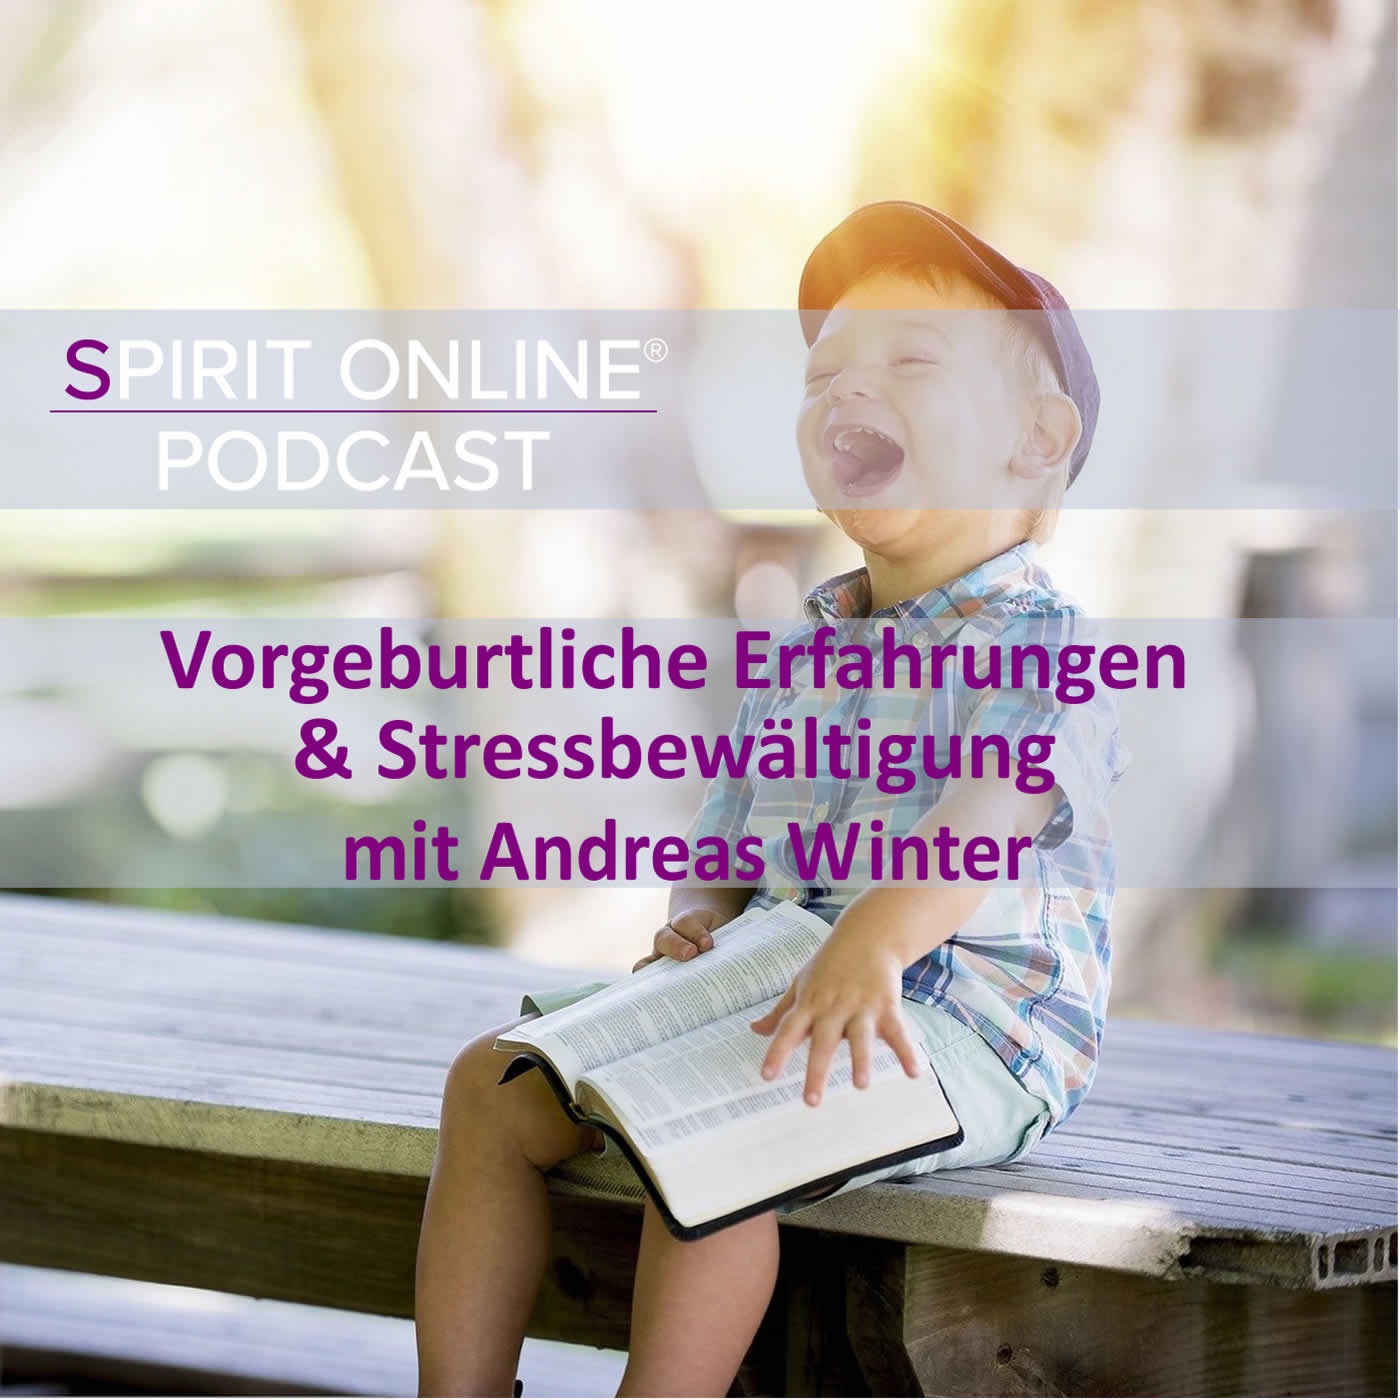 Vorgeburtliche Erfahrungen und Stressbewältigung mit Andreas Winter